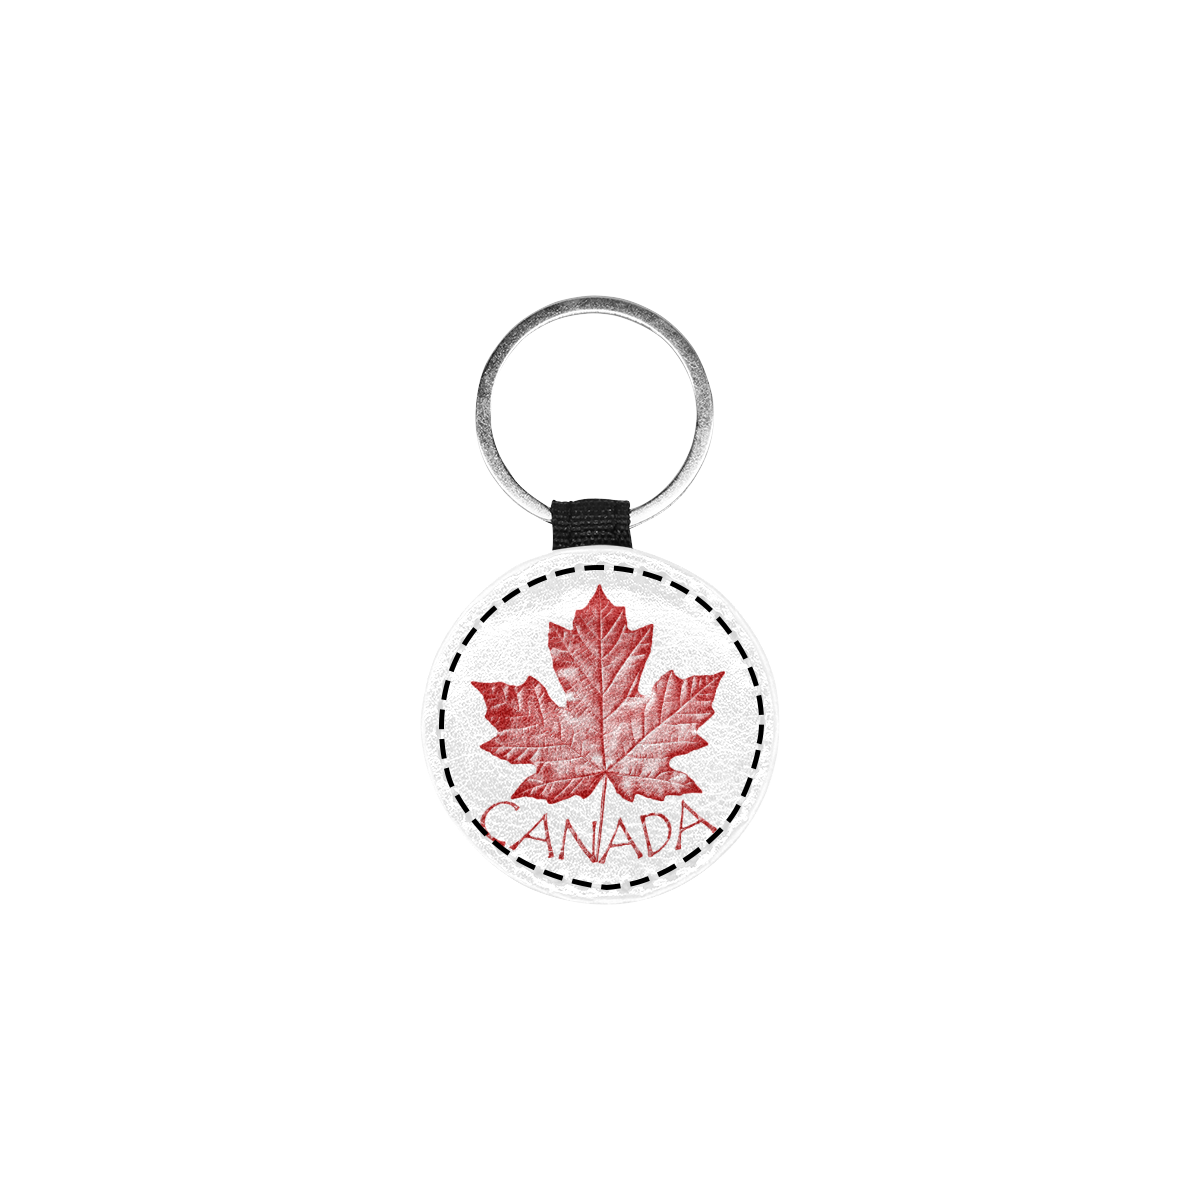 Canada Maple Leaf Souvenir Round Pet ID Tag